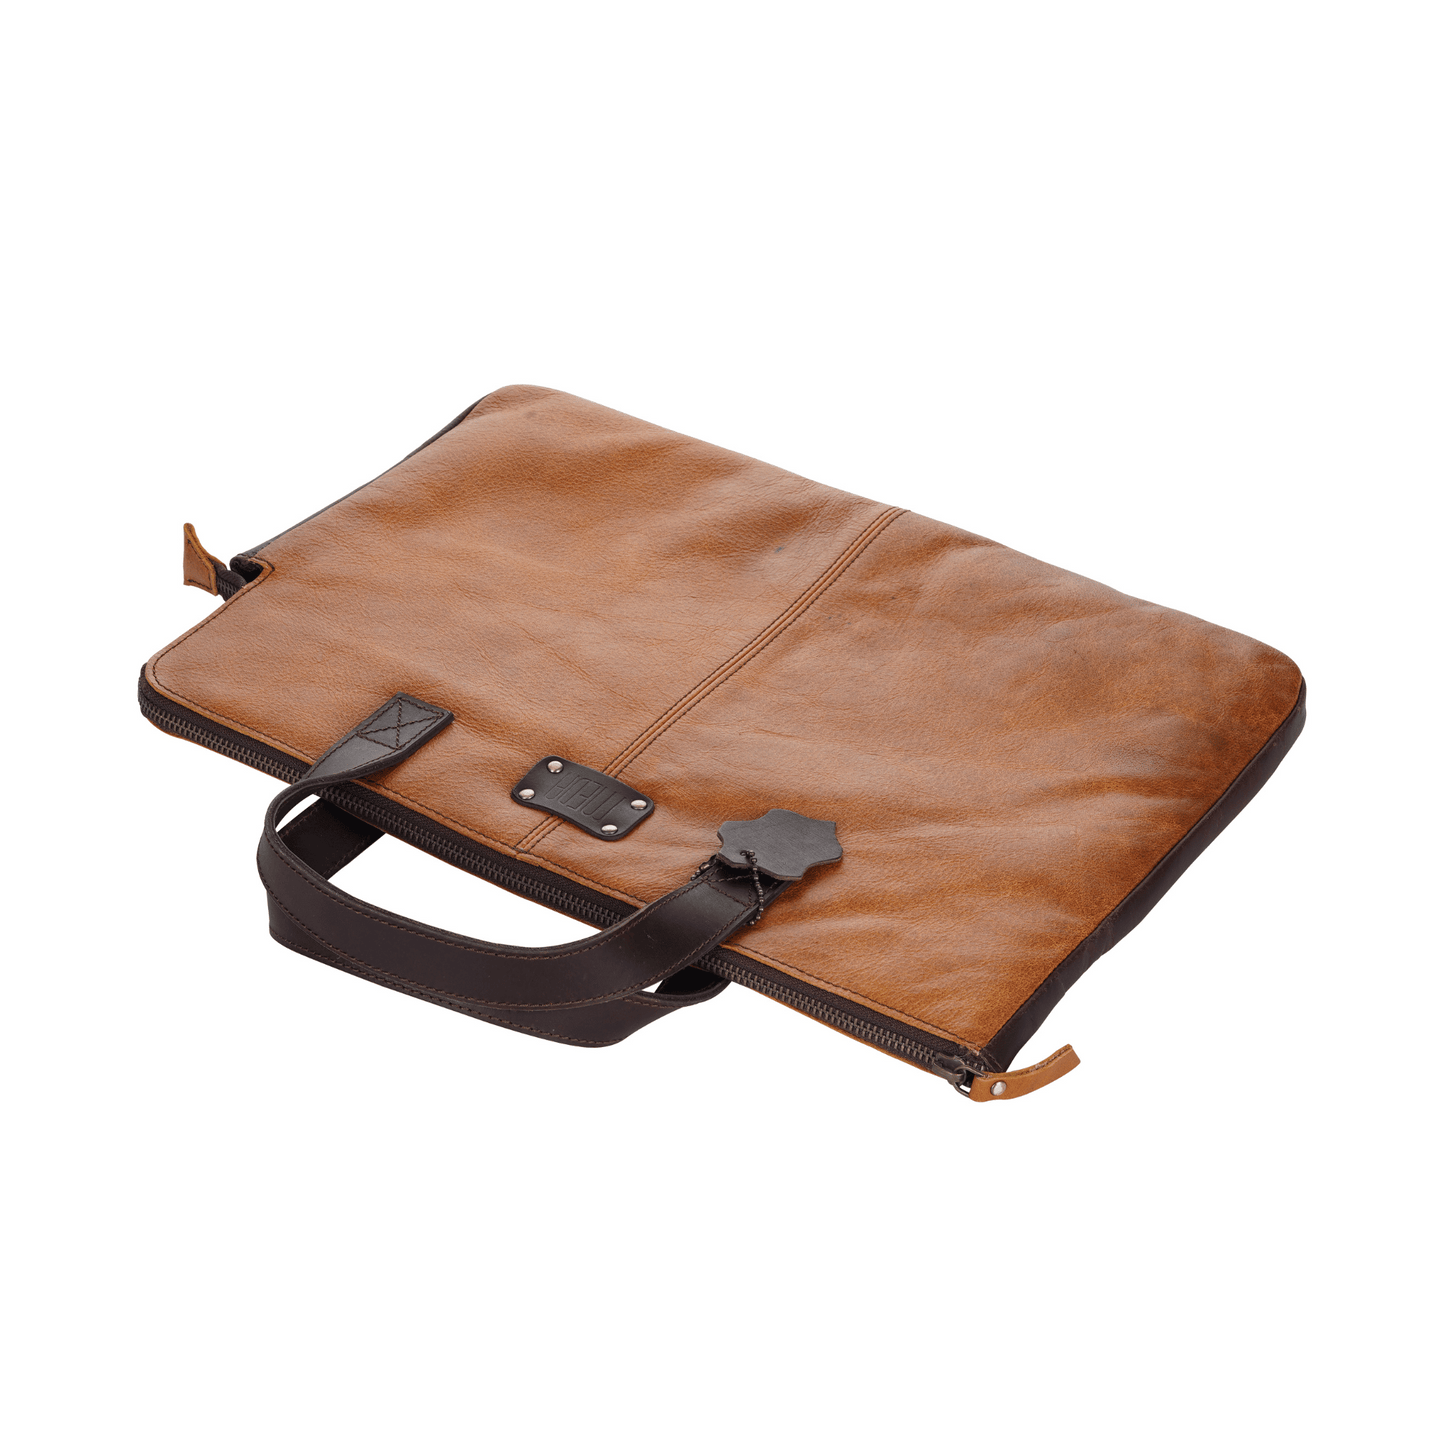 Handy Held Genuine Leather Laptop Bag Brown Tan